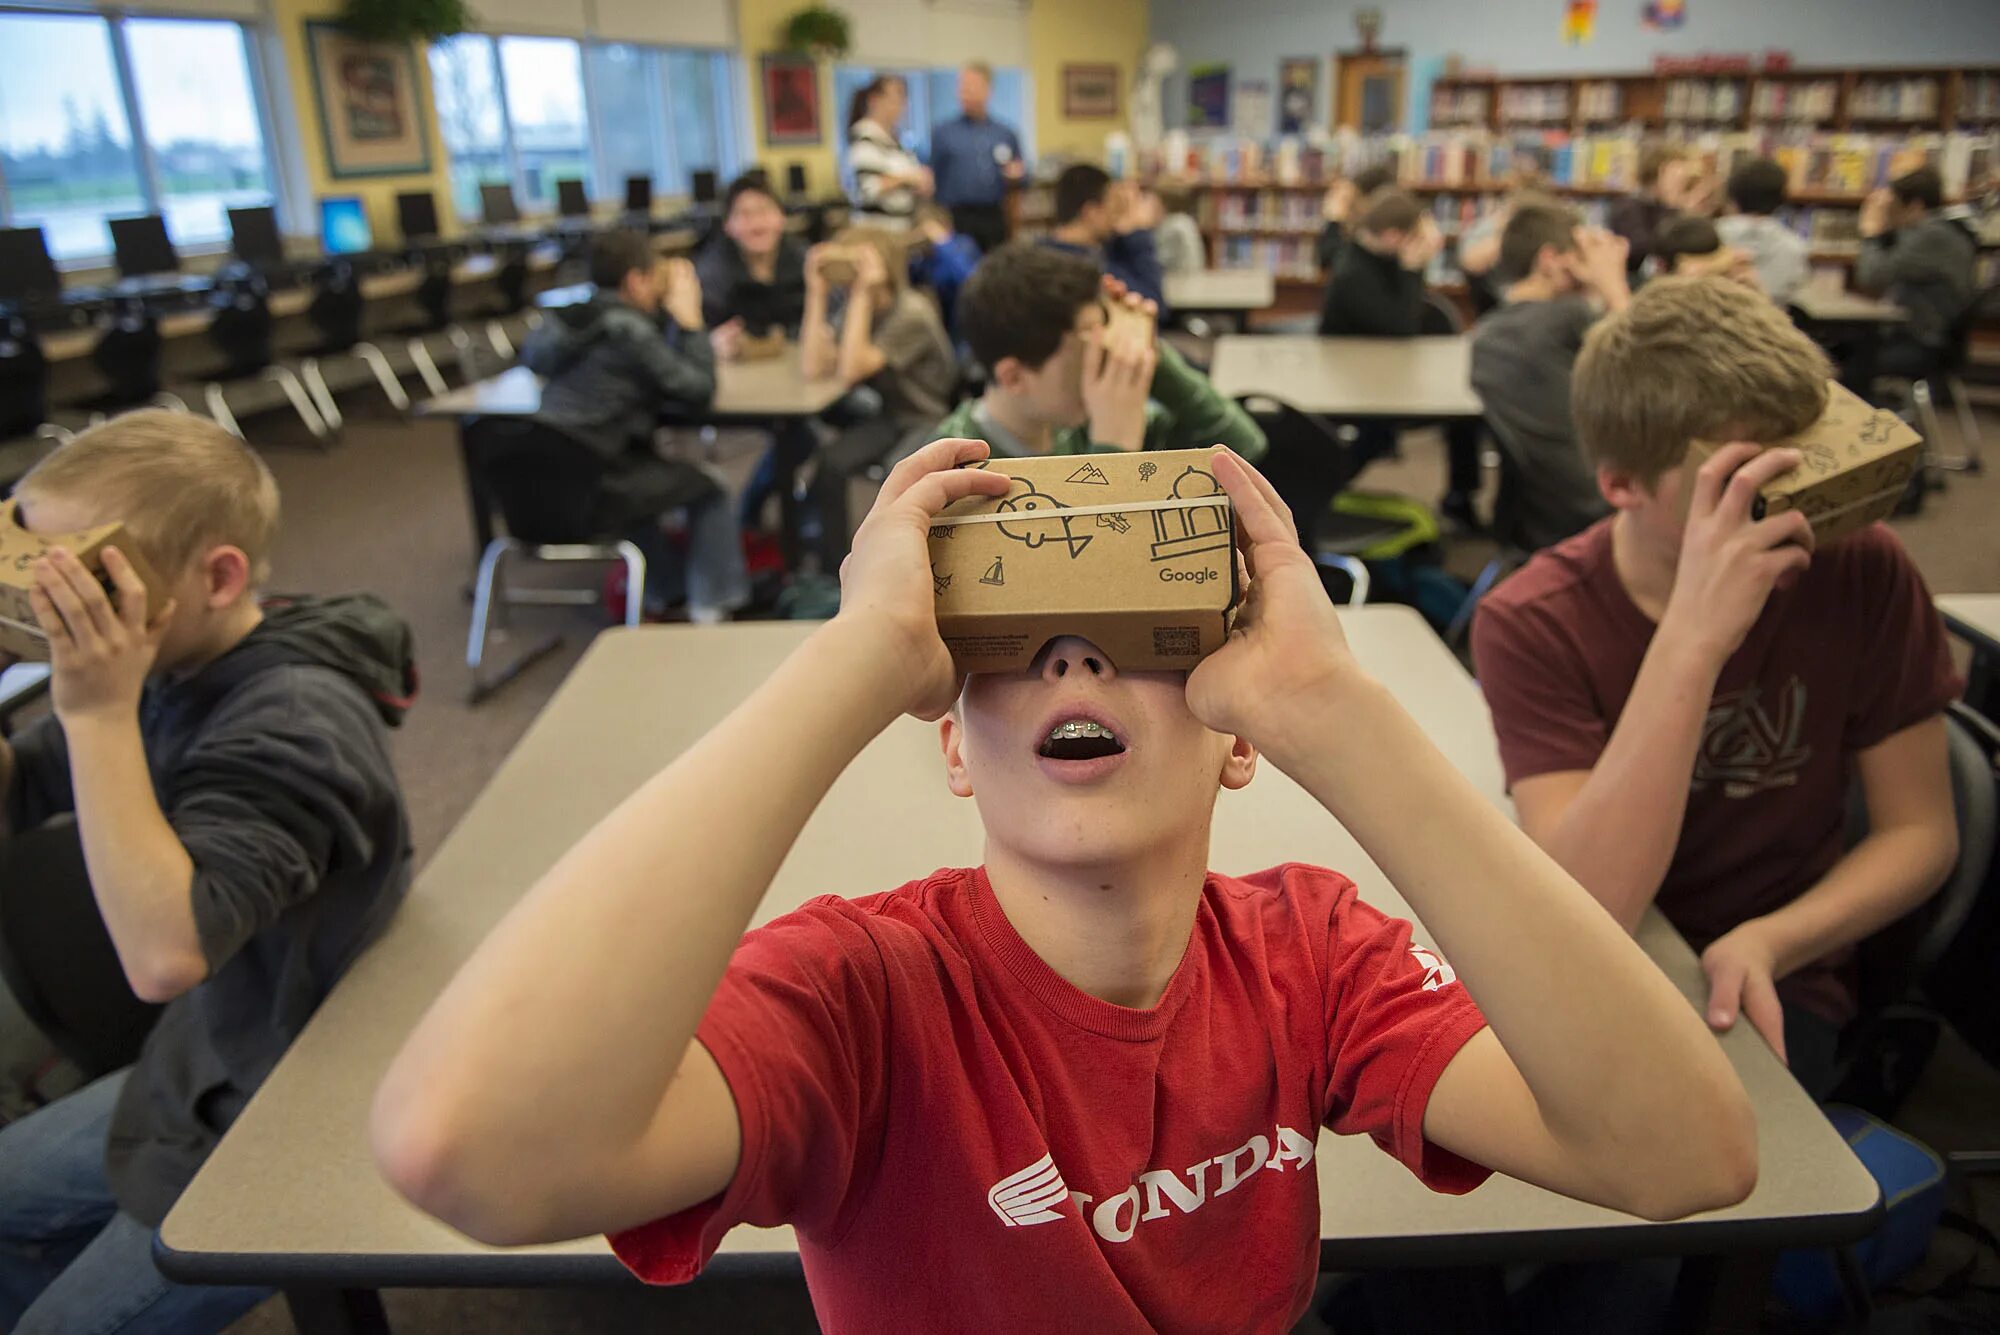 Vr уроки. Виртуальная реальность в учебе. Шлем виртуальной реальности в школе. Очки виртуальной реальности в школе. Школьники в ВР.